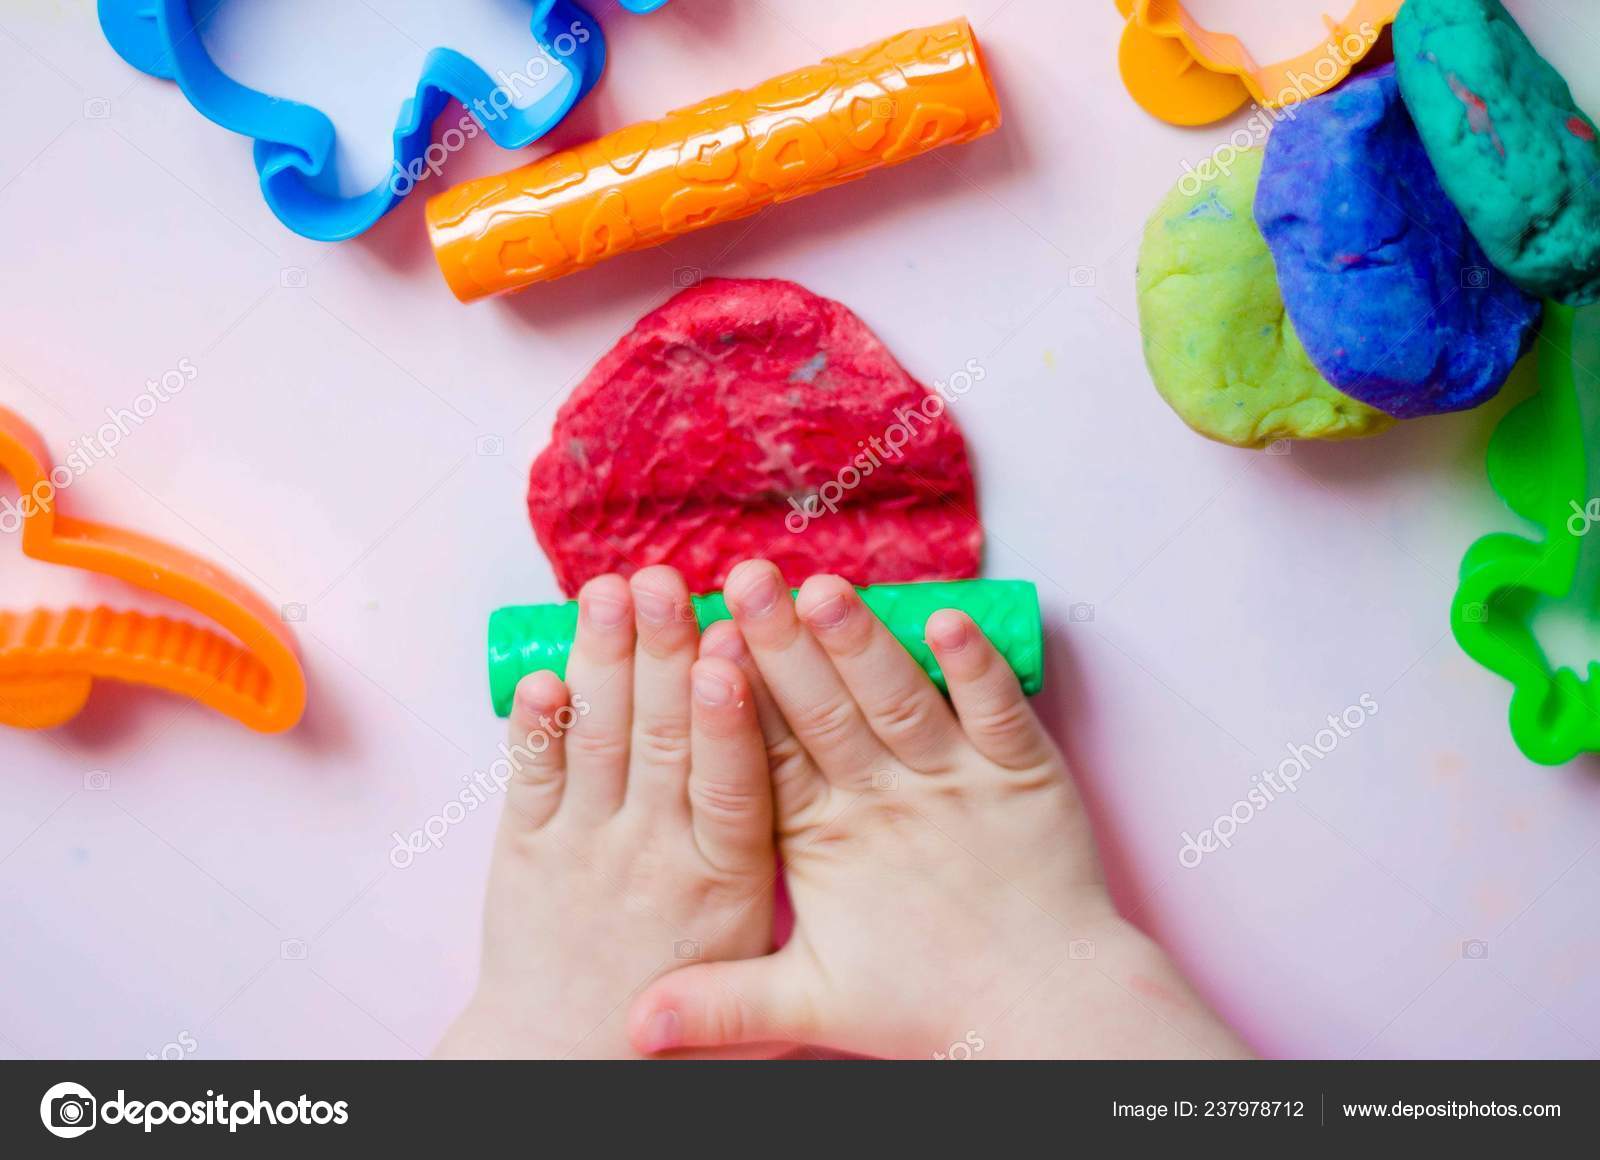 Где там пластилин. Пластилин для детей. Пластилин в руках. Ребенок раскатывает пластилин. Пластилин в руках у детей.